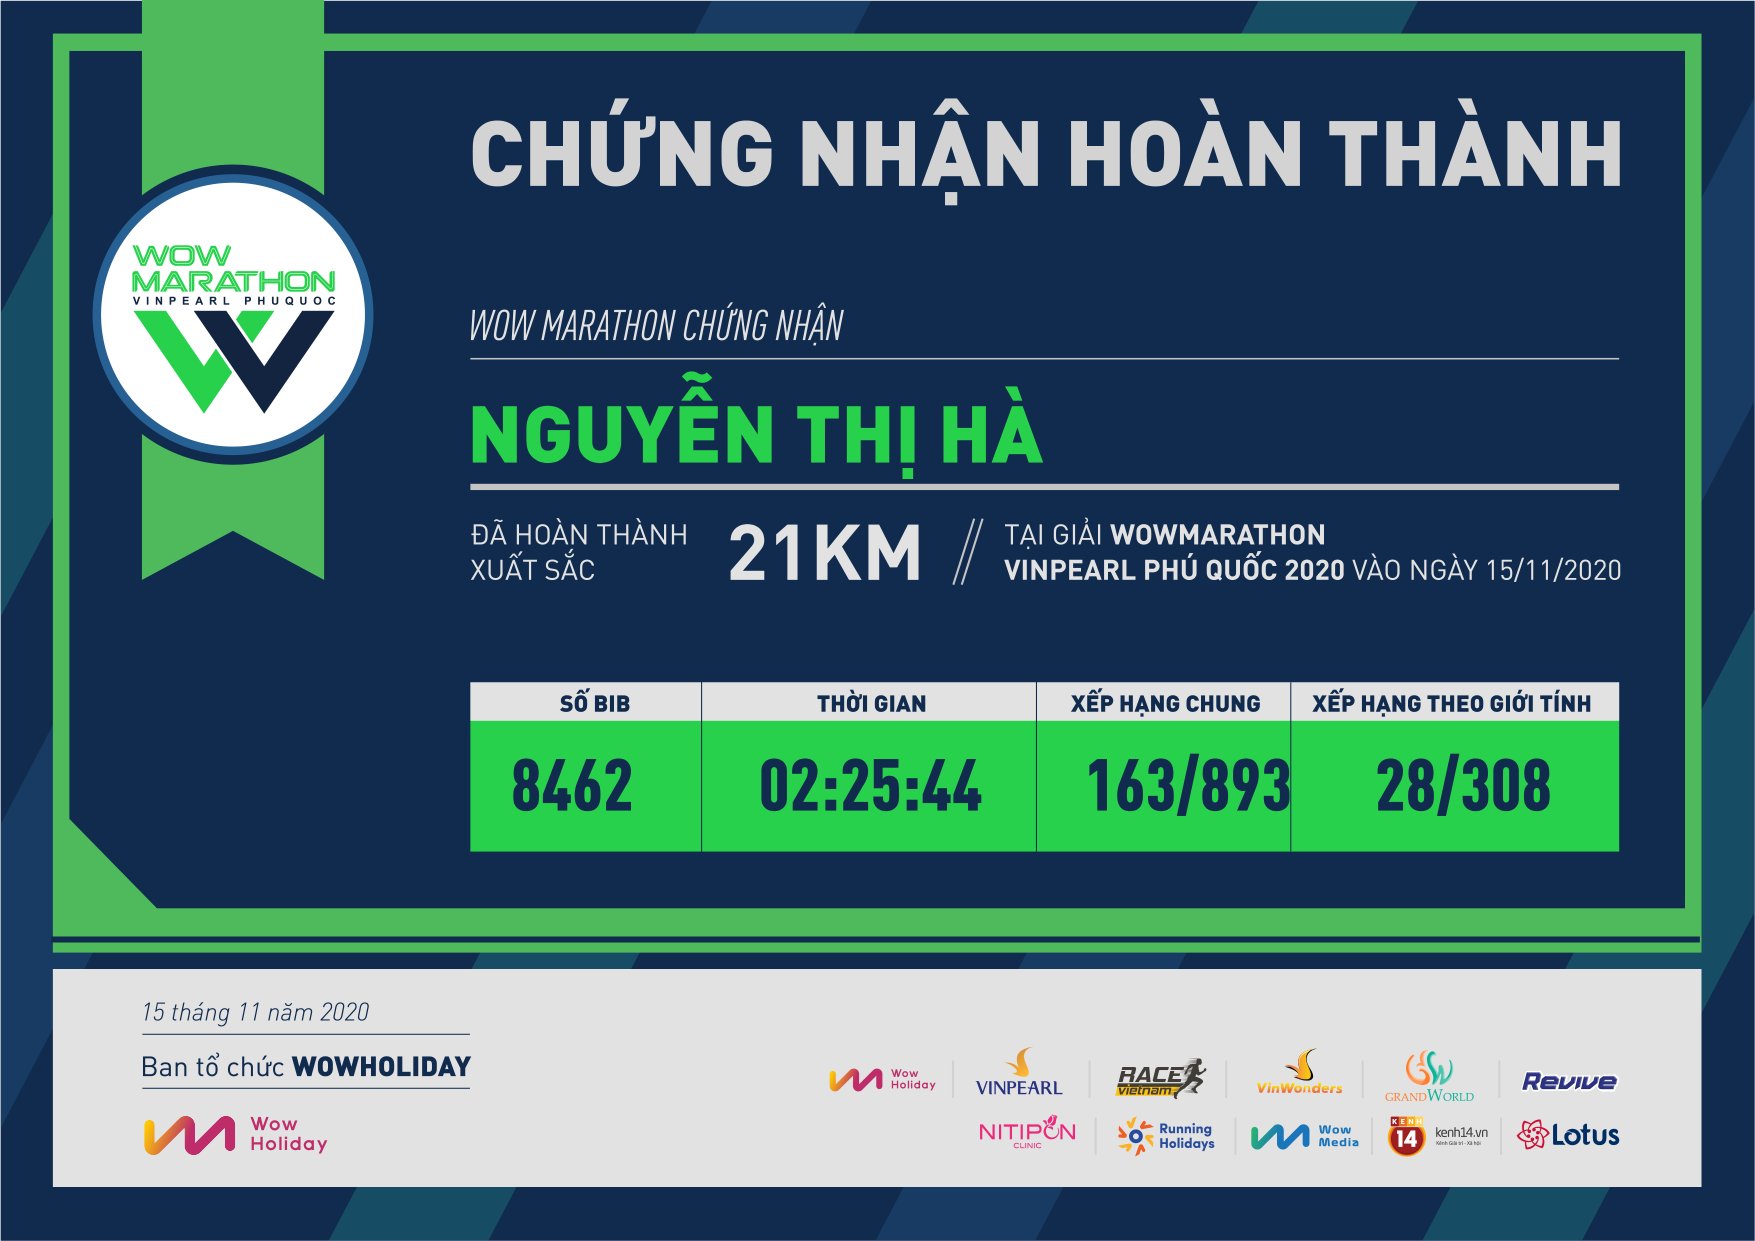 8462 - Nguyễn Thị Hà